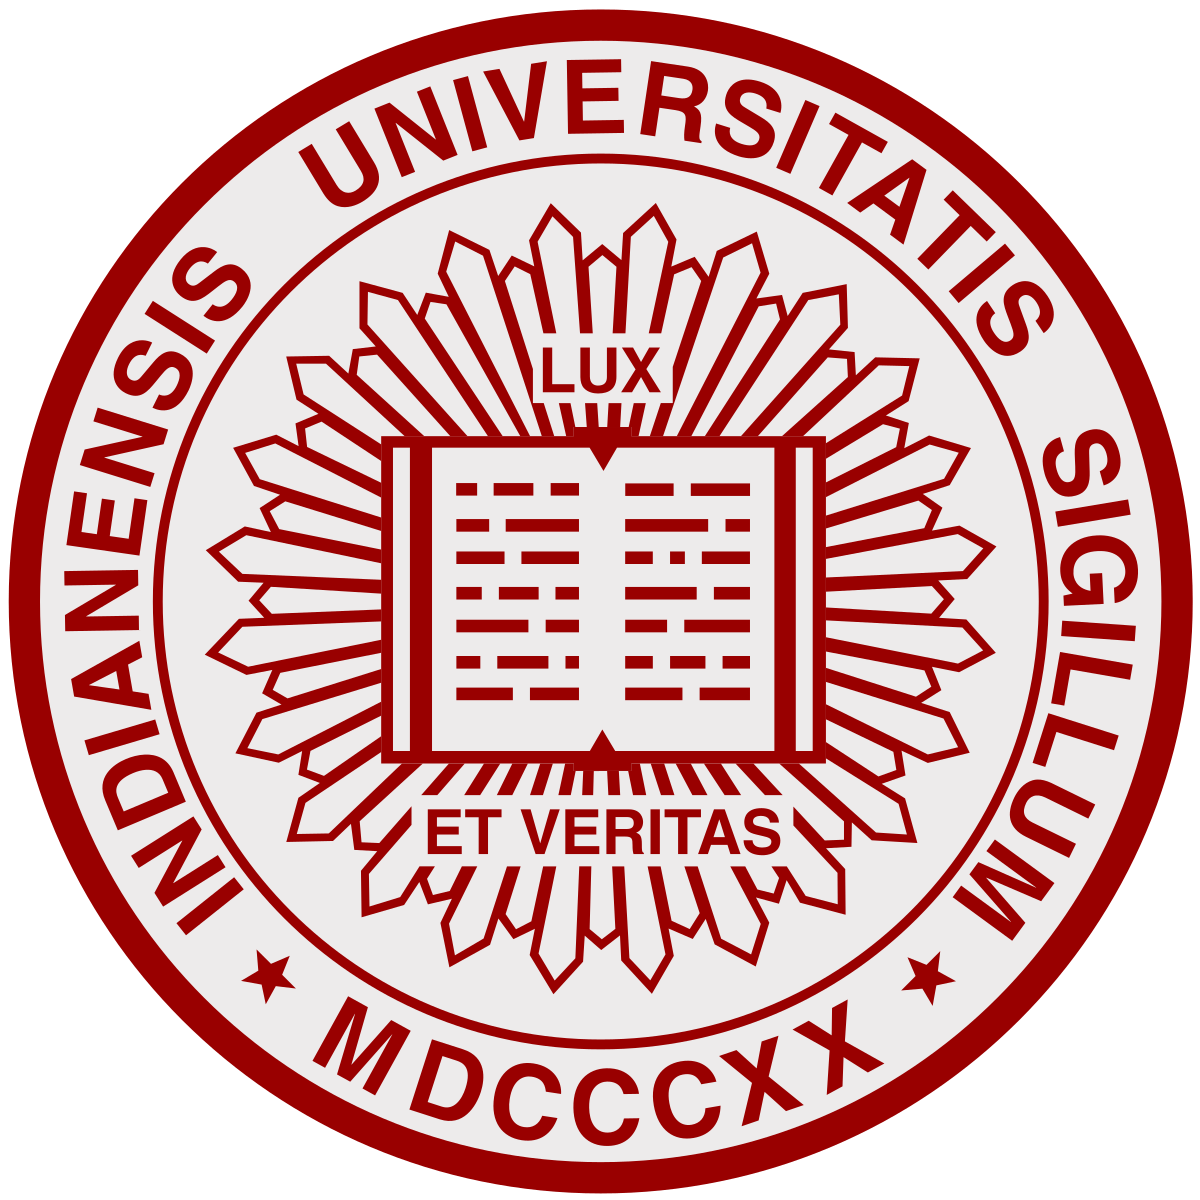 IUB Logo - Indiana University